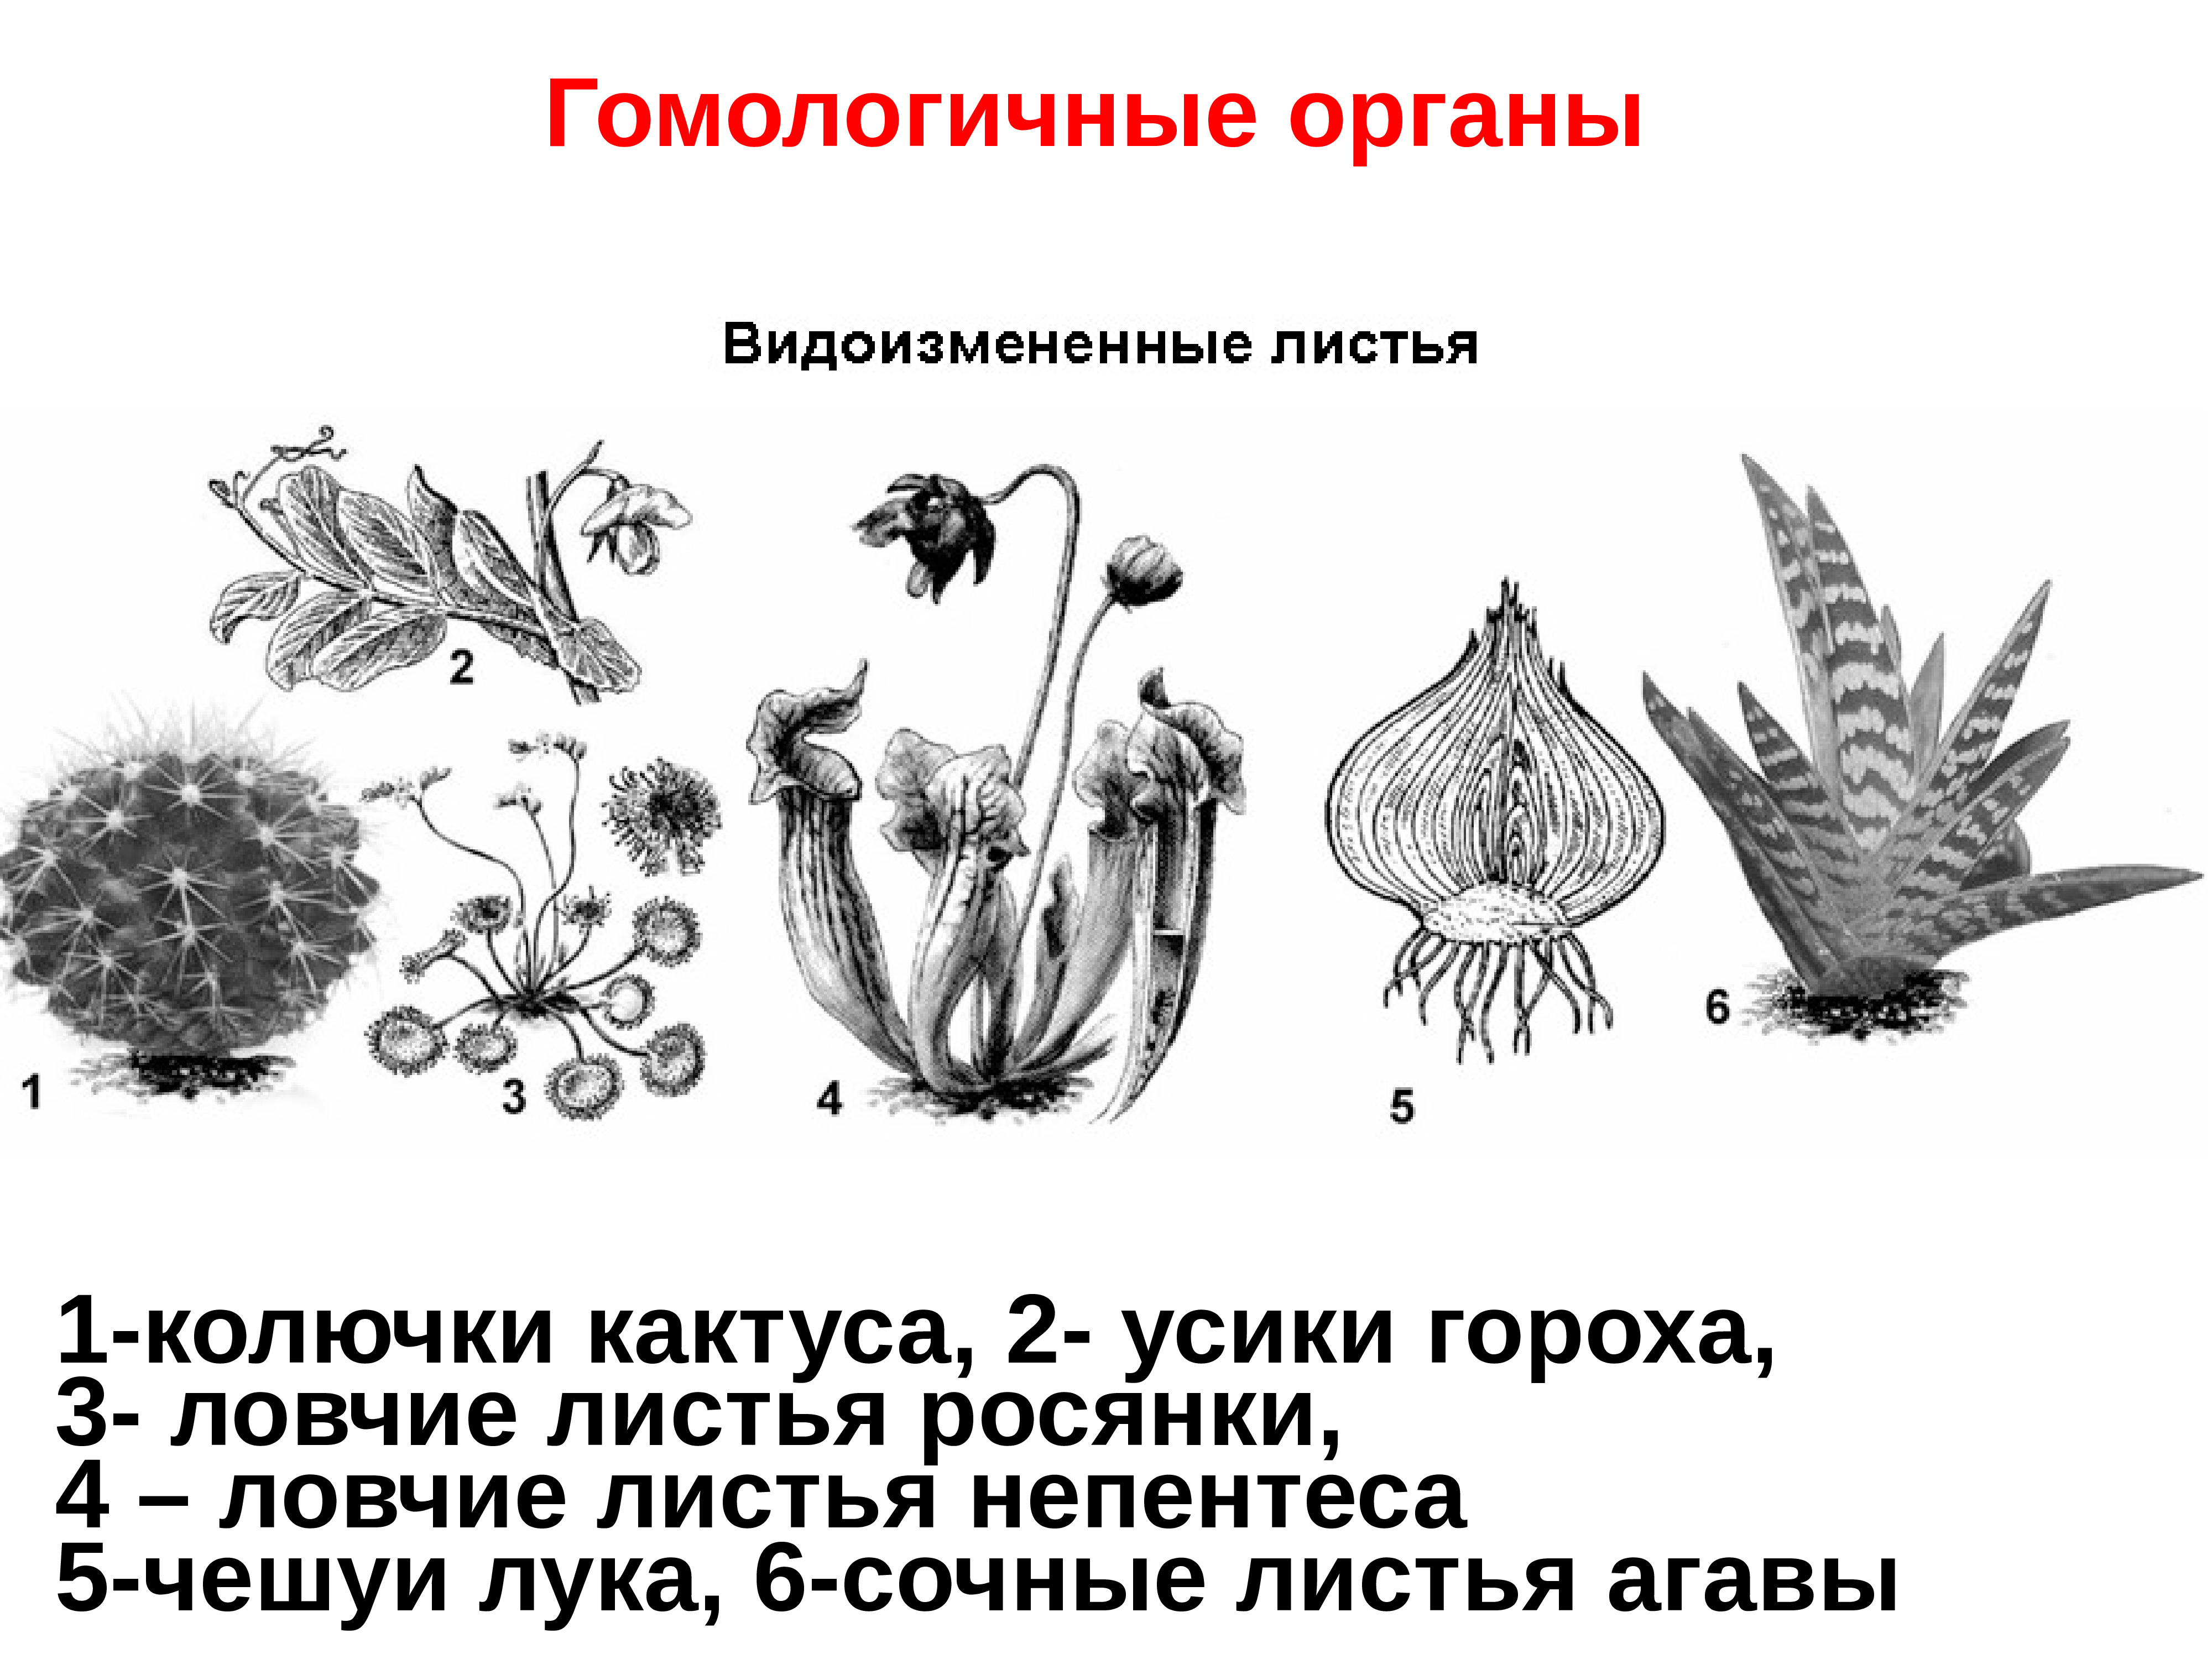 Гомологичные органы растений примеры